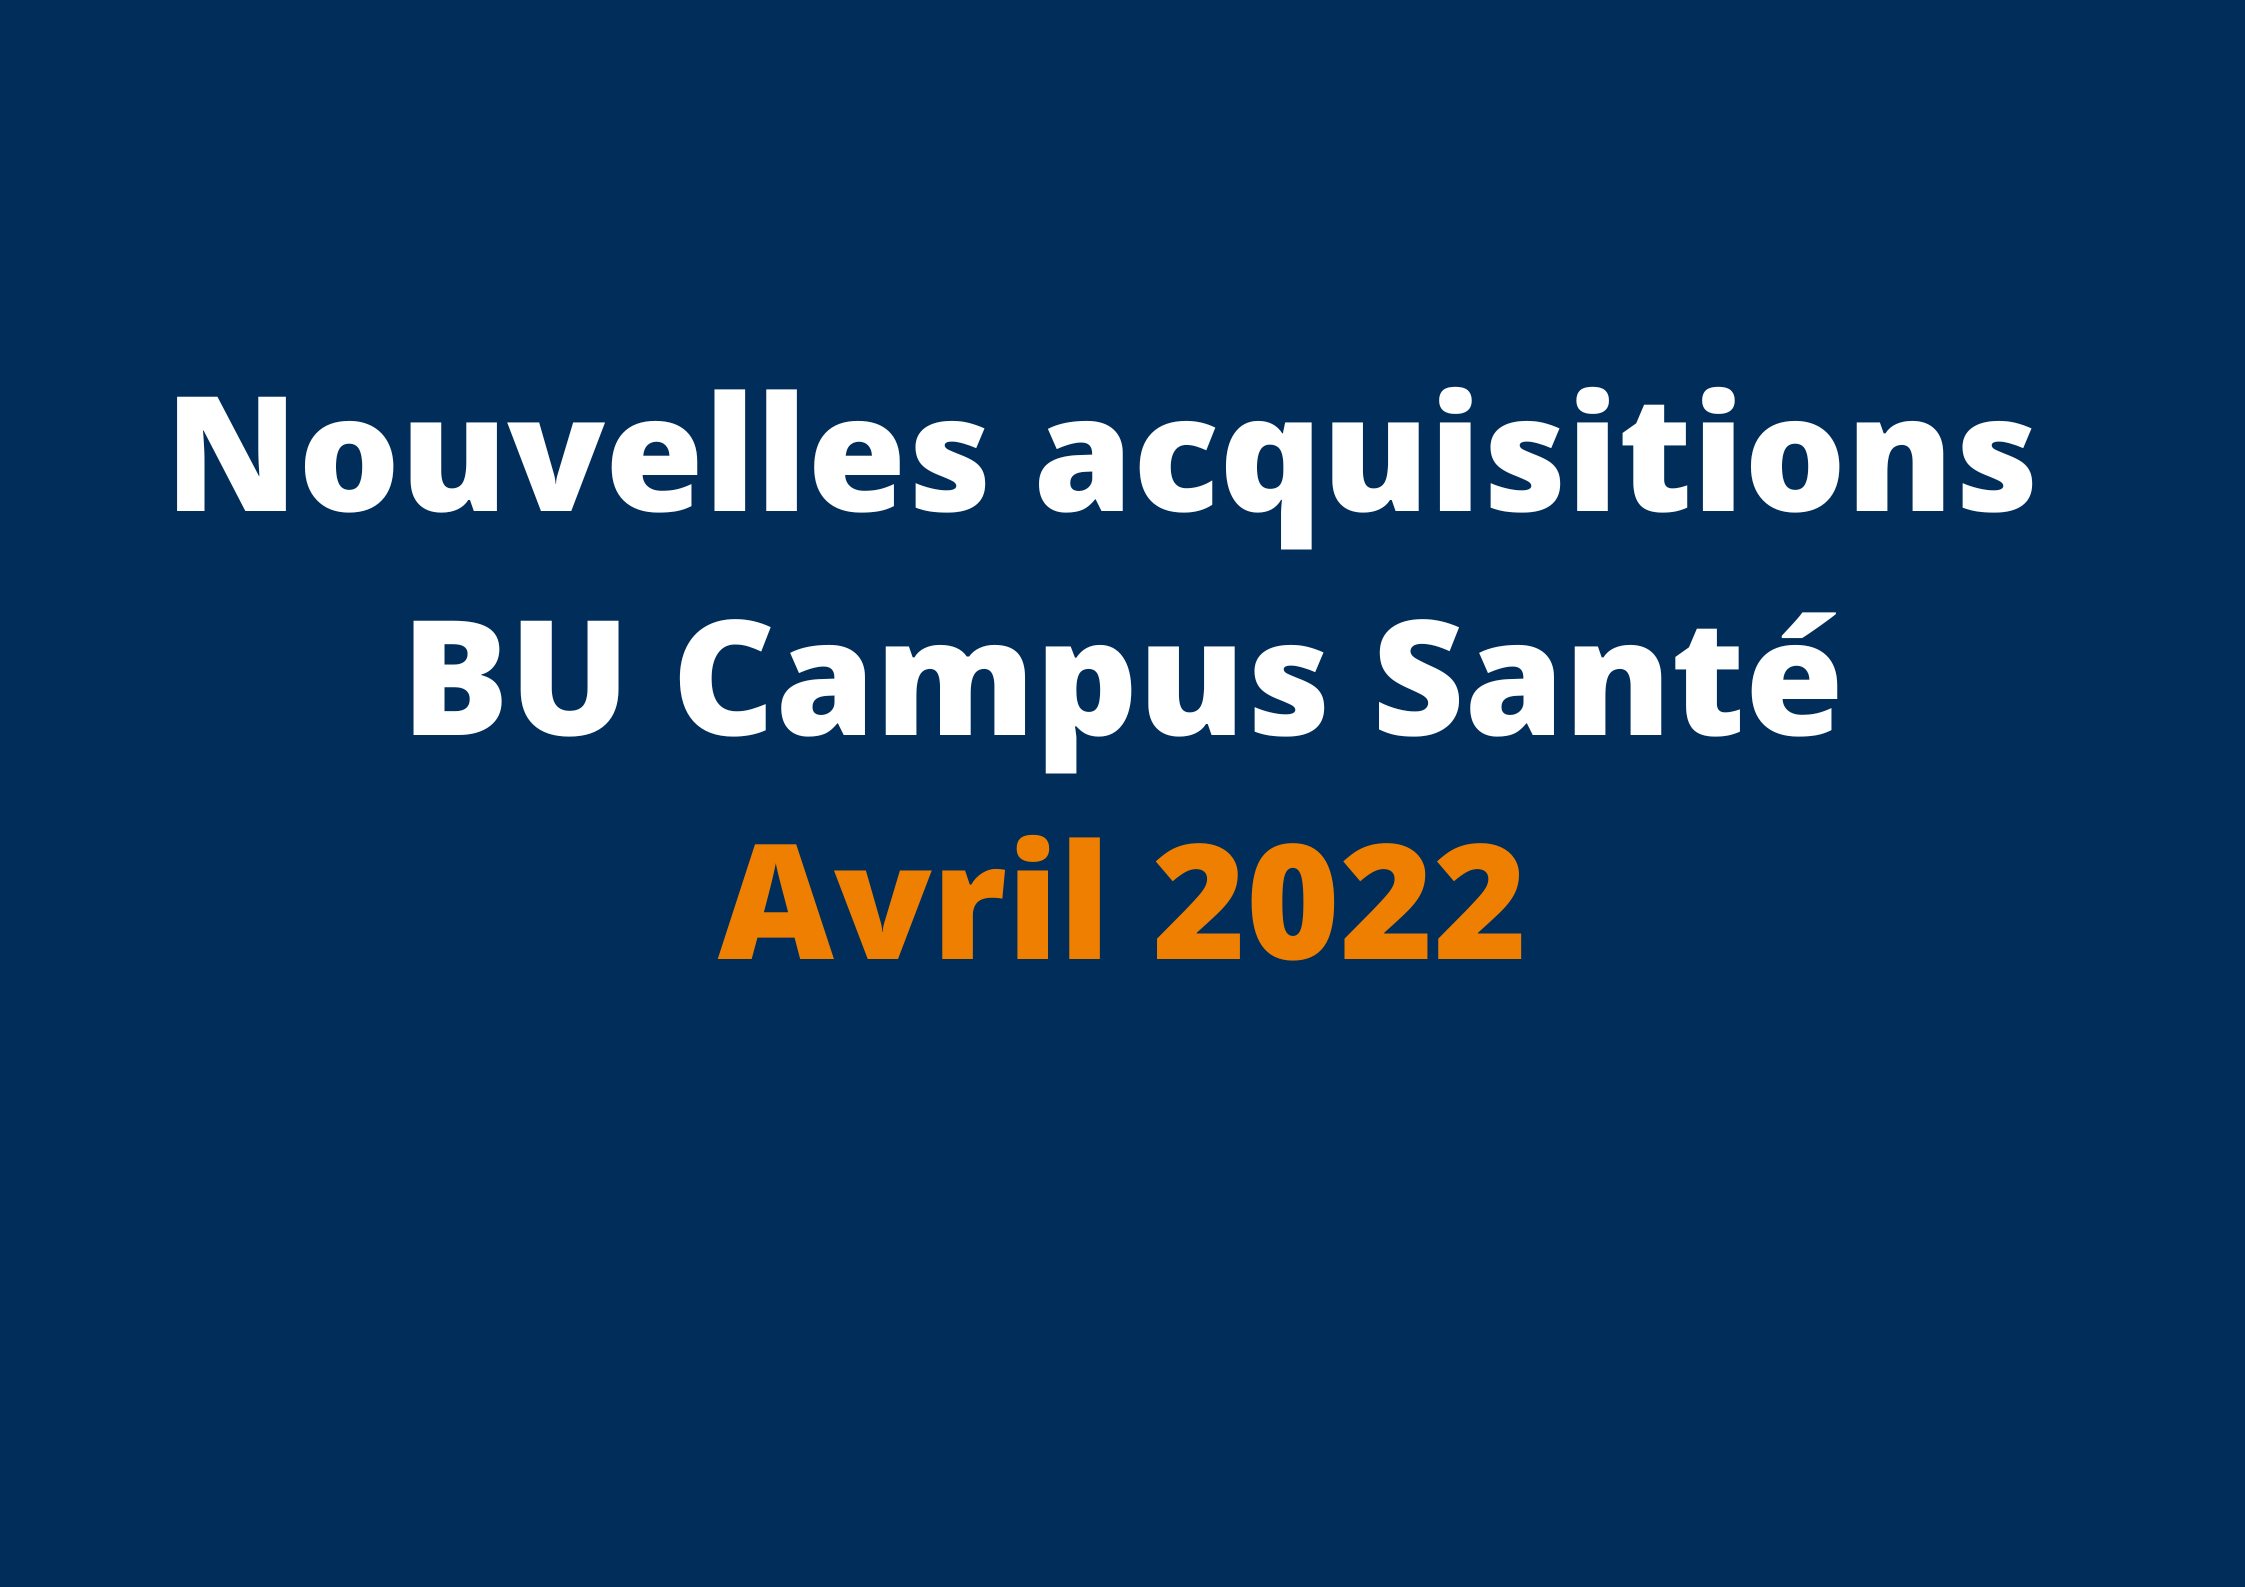 BU Campus Santé nouvelles acquisitions avril 2022